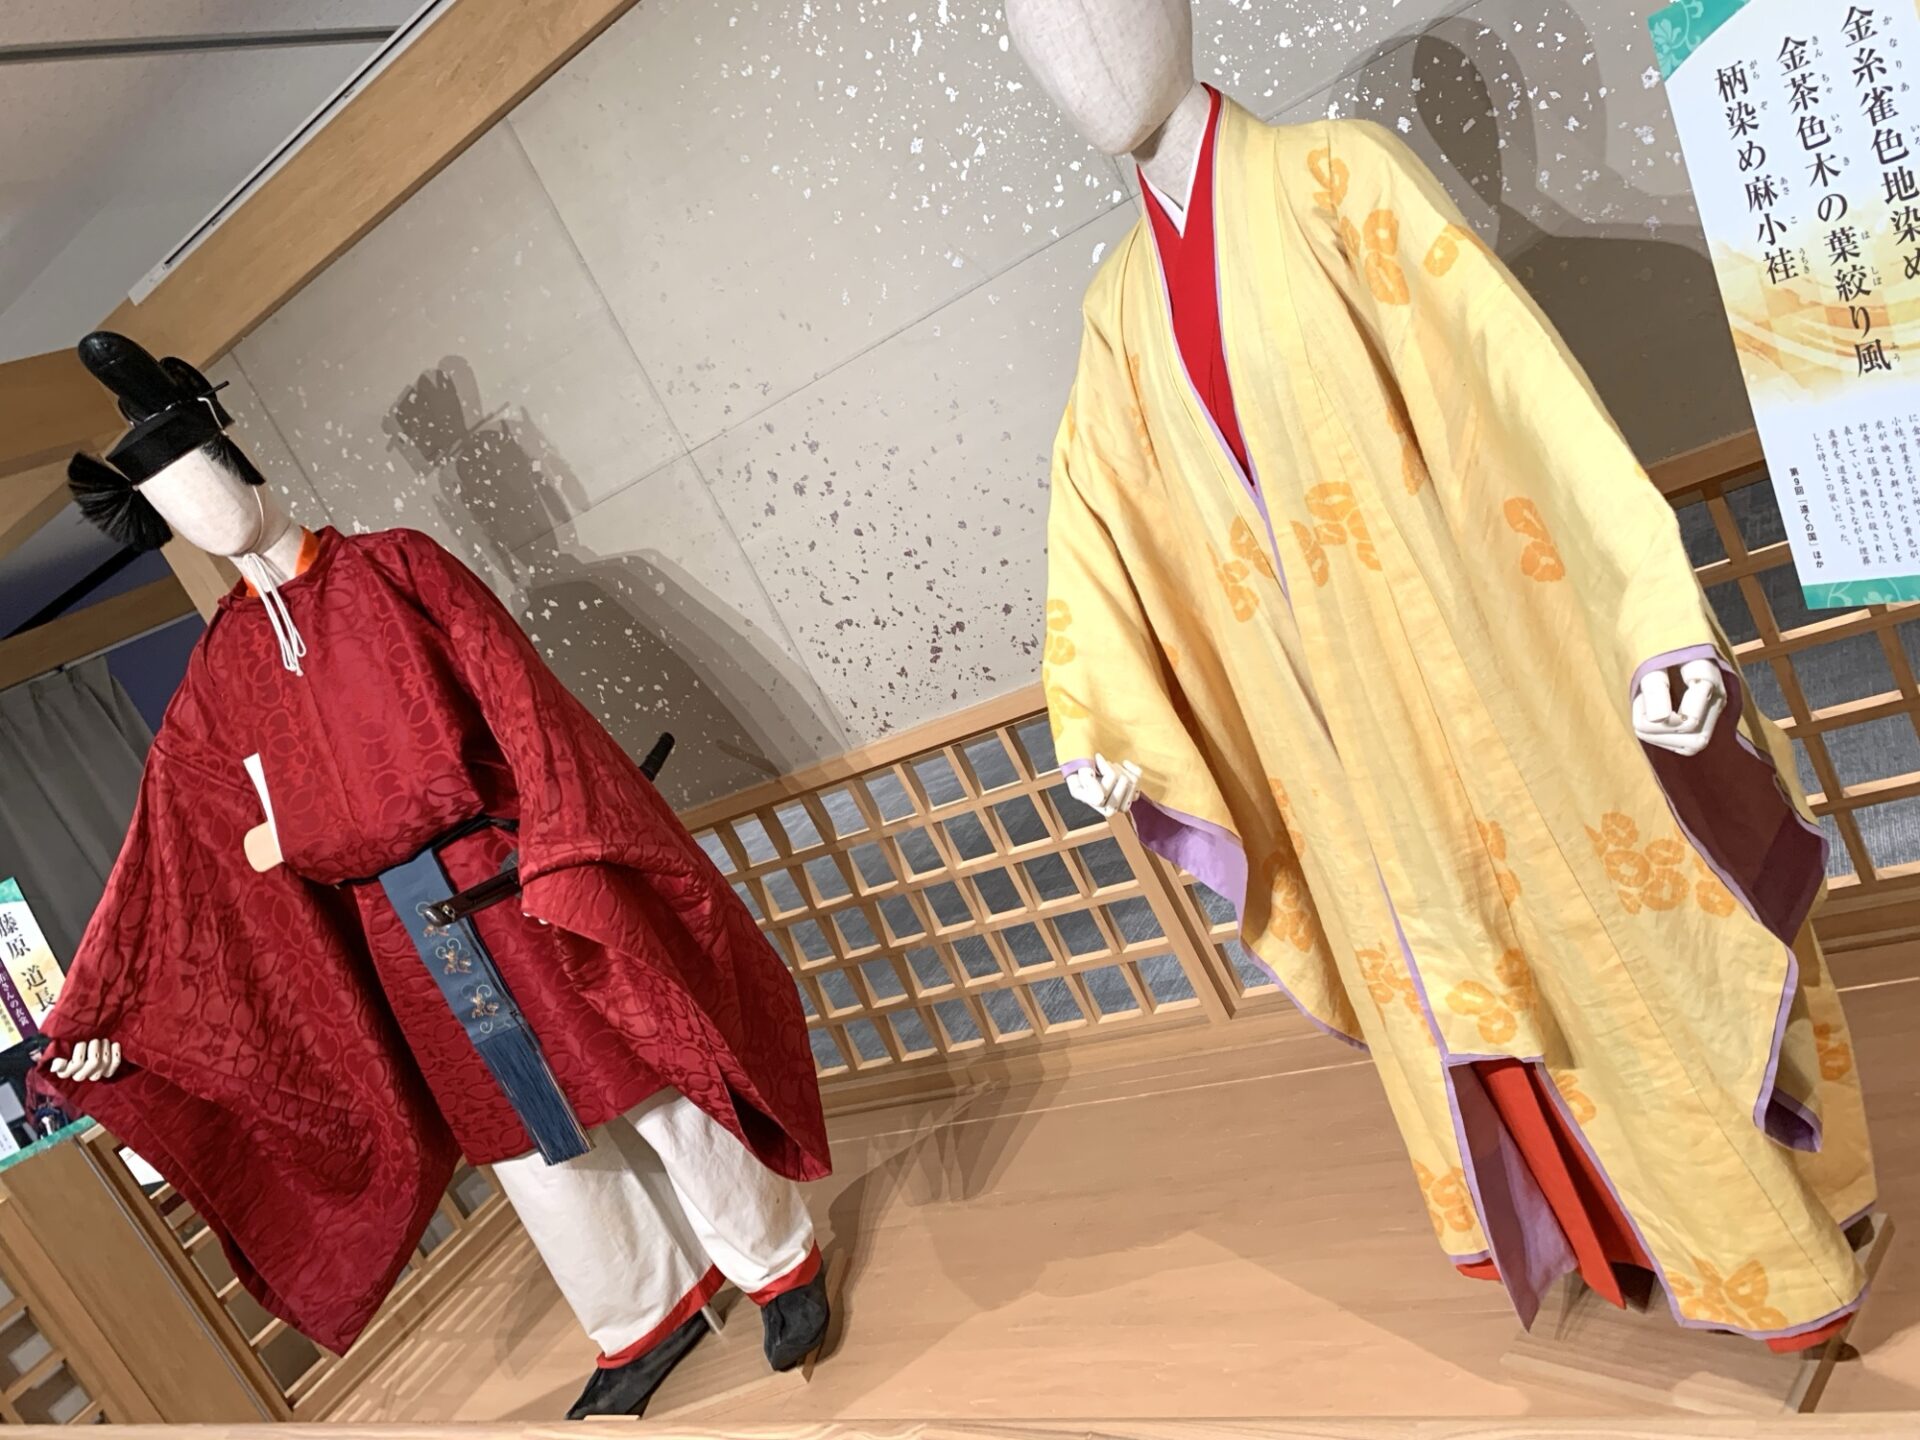 道長とまひろの衣装。柄本佑さんと吉高由里子さんが実際に着用。